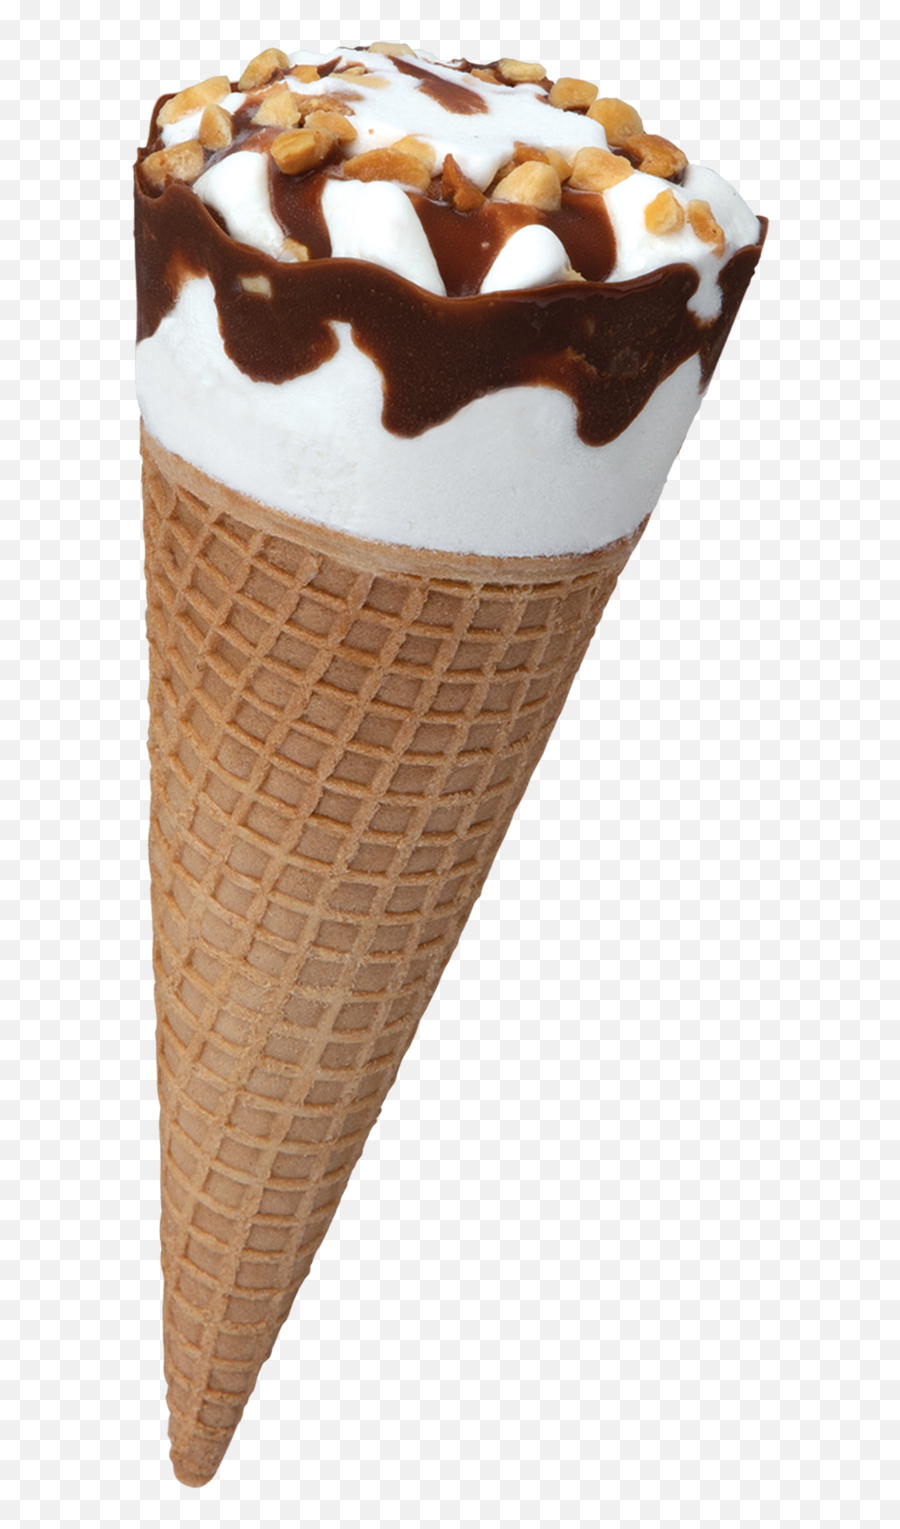 Hersheyu0027s Ice Cream Home - Hershey Ice Cream Cone Png,Ice Cream Transparent Background